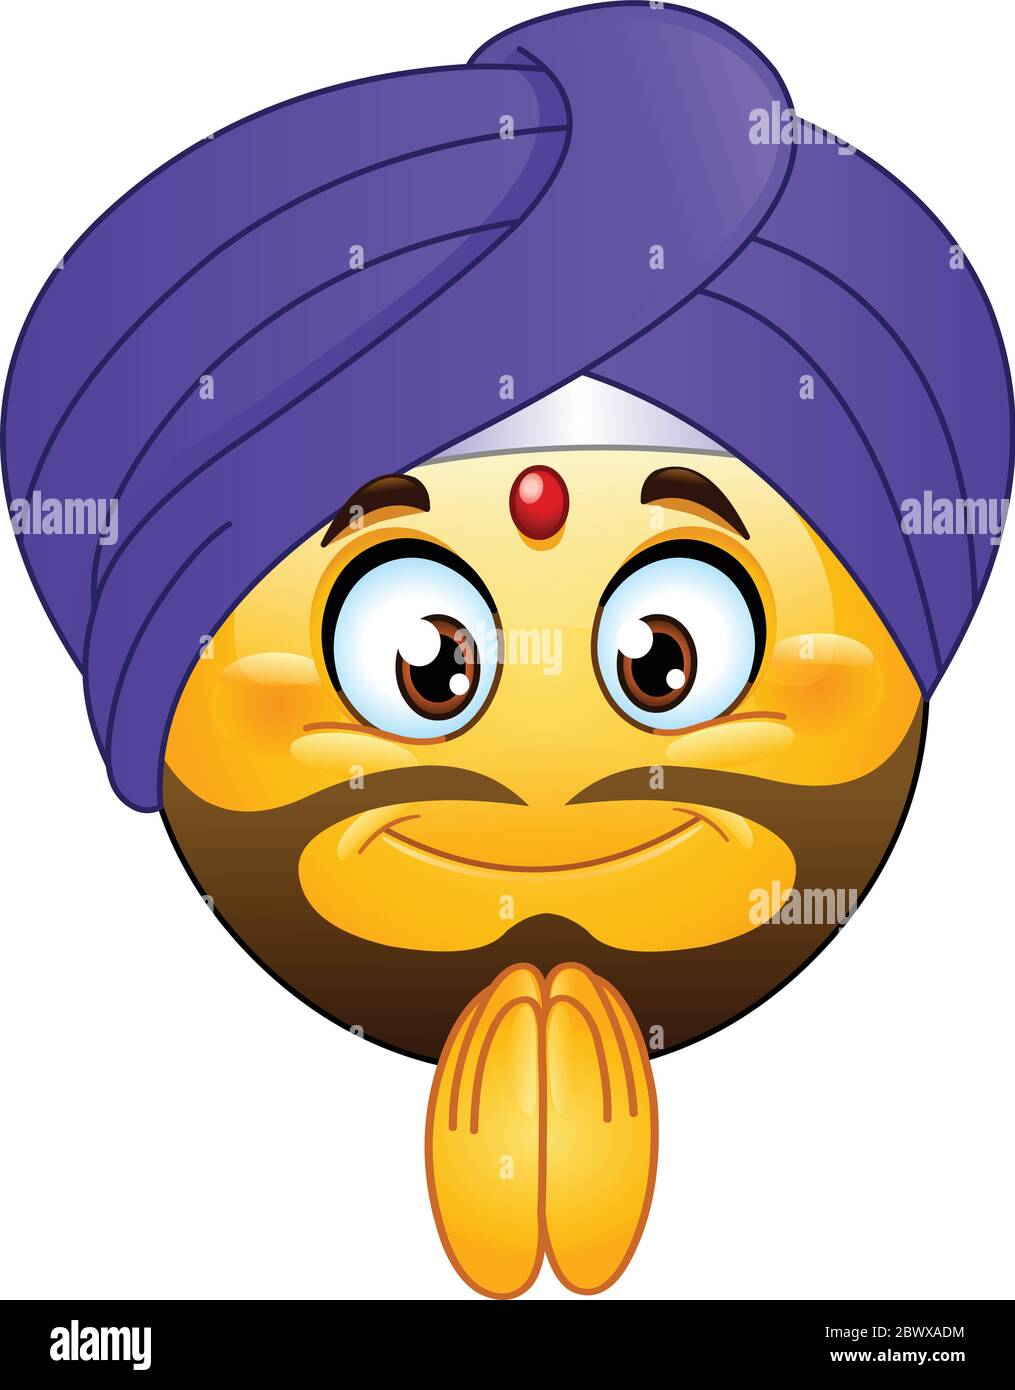 Traditionelle bärtige indische Emoji-Emoticon mit einem roten Tikka auf der Stirn, der einen purpurnen Turban trägt und eine Namaste-Geste macht Stock Vektor